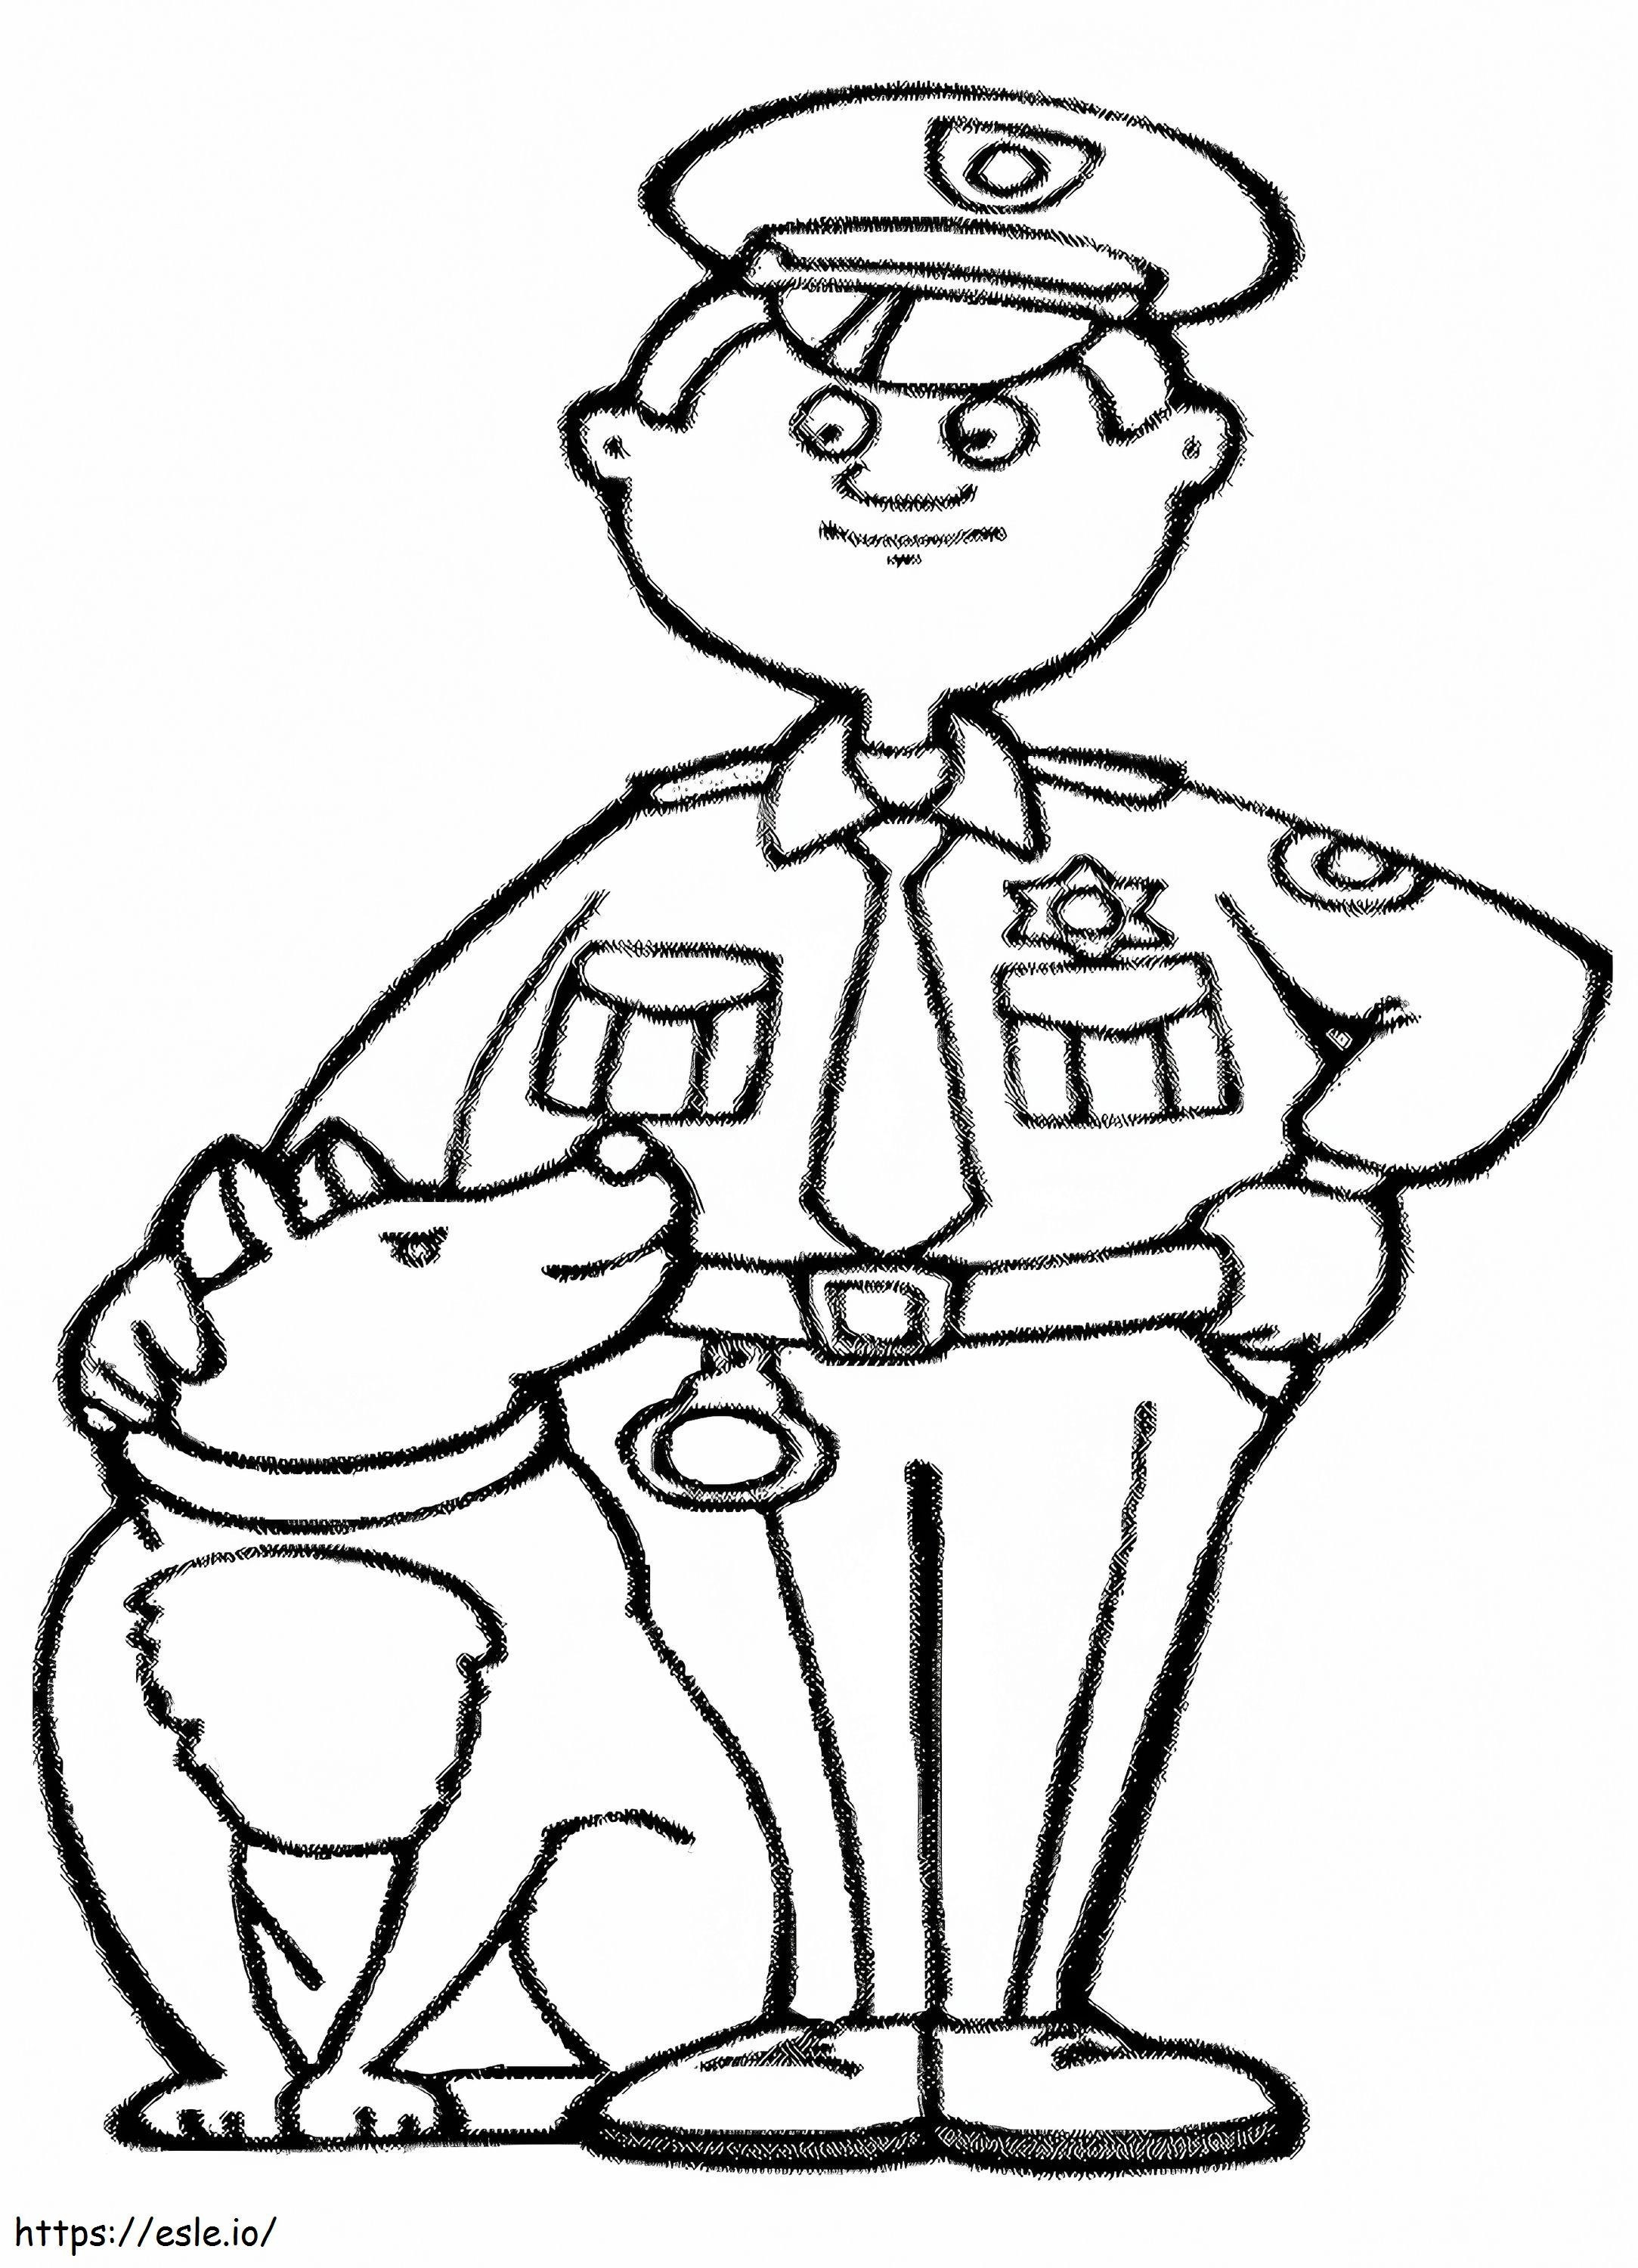 Polizia e cane da colorare